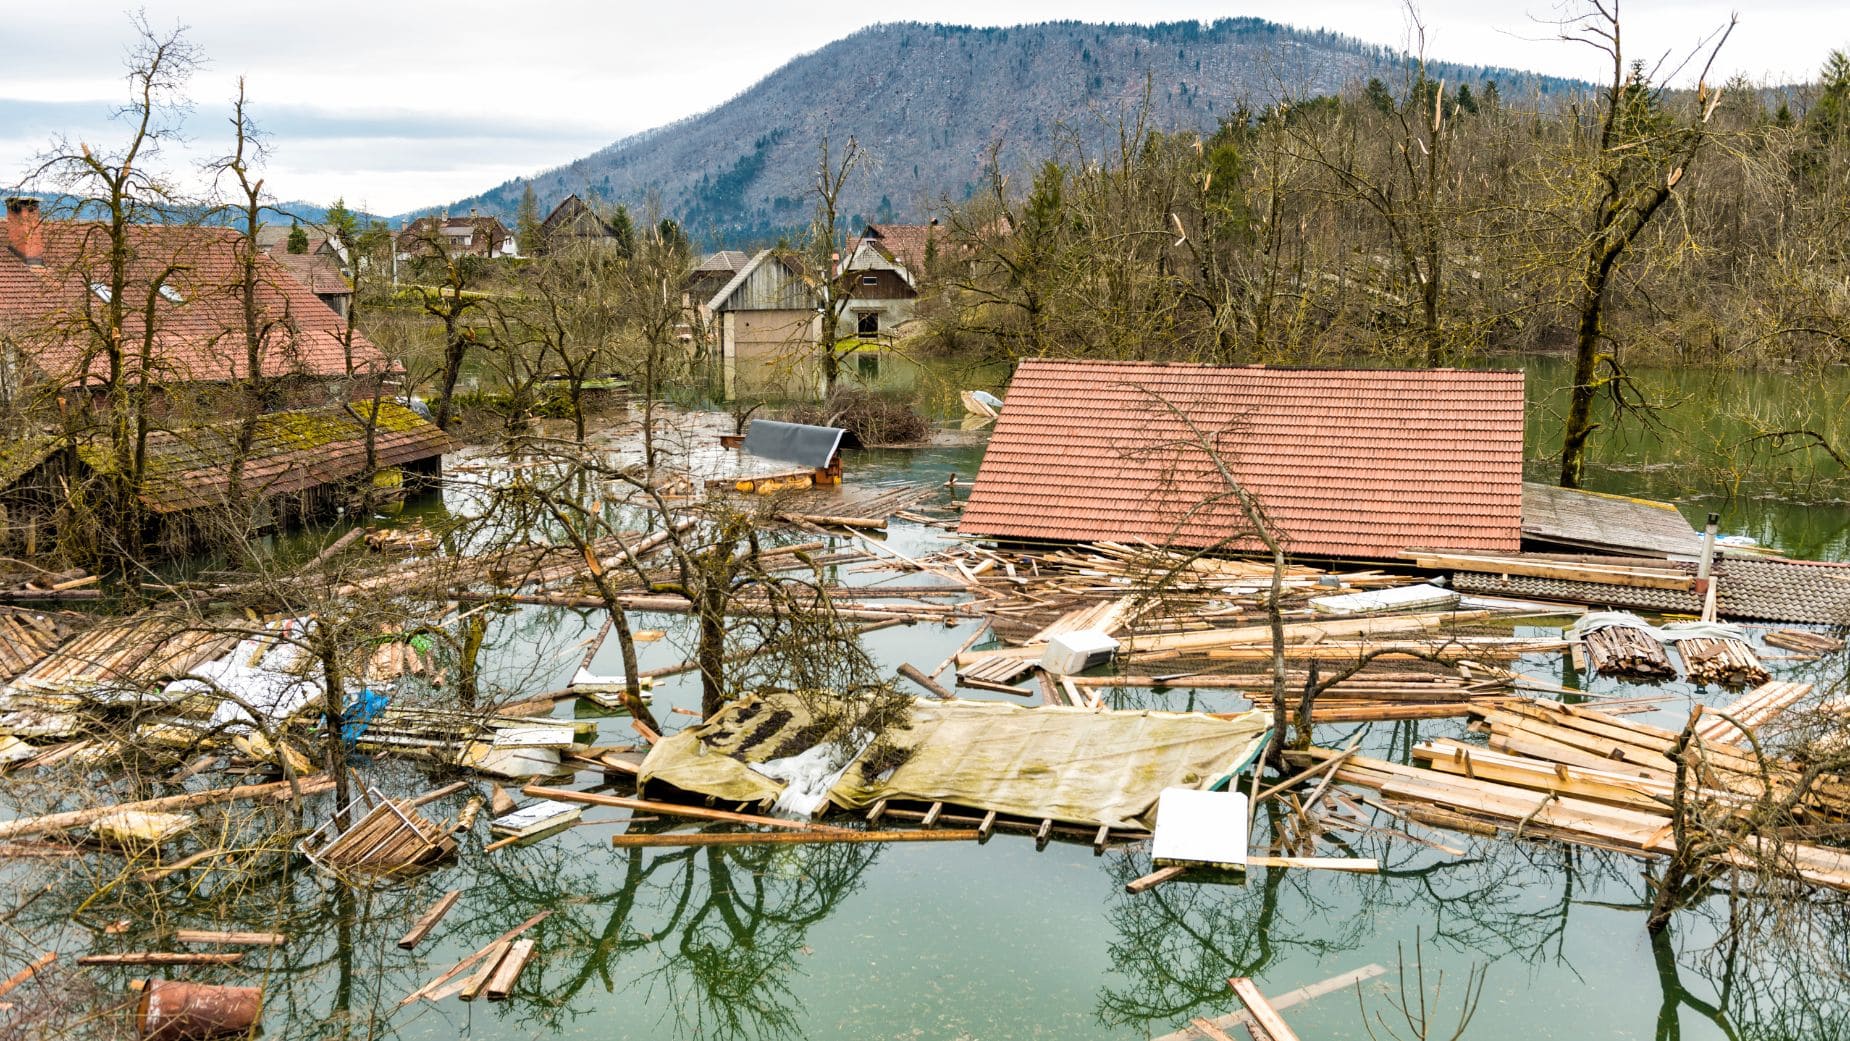 En caso de catástrofe es importante contar con un seguro que cubra la hipoteca